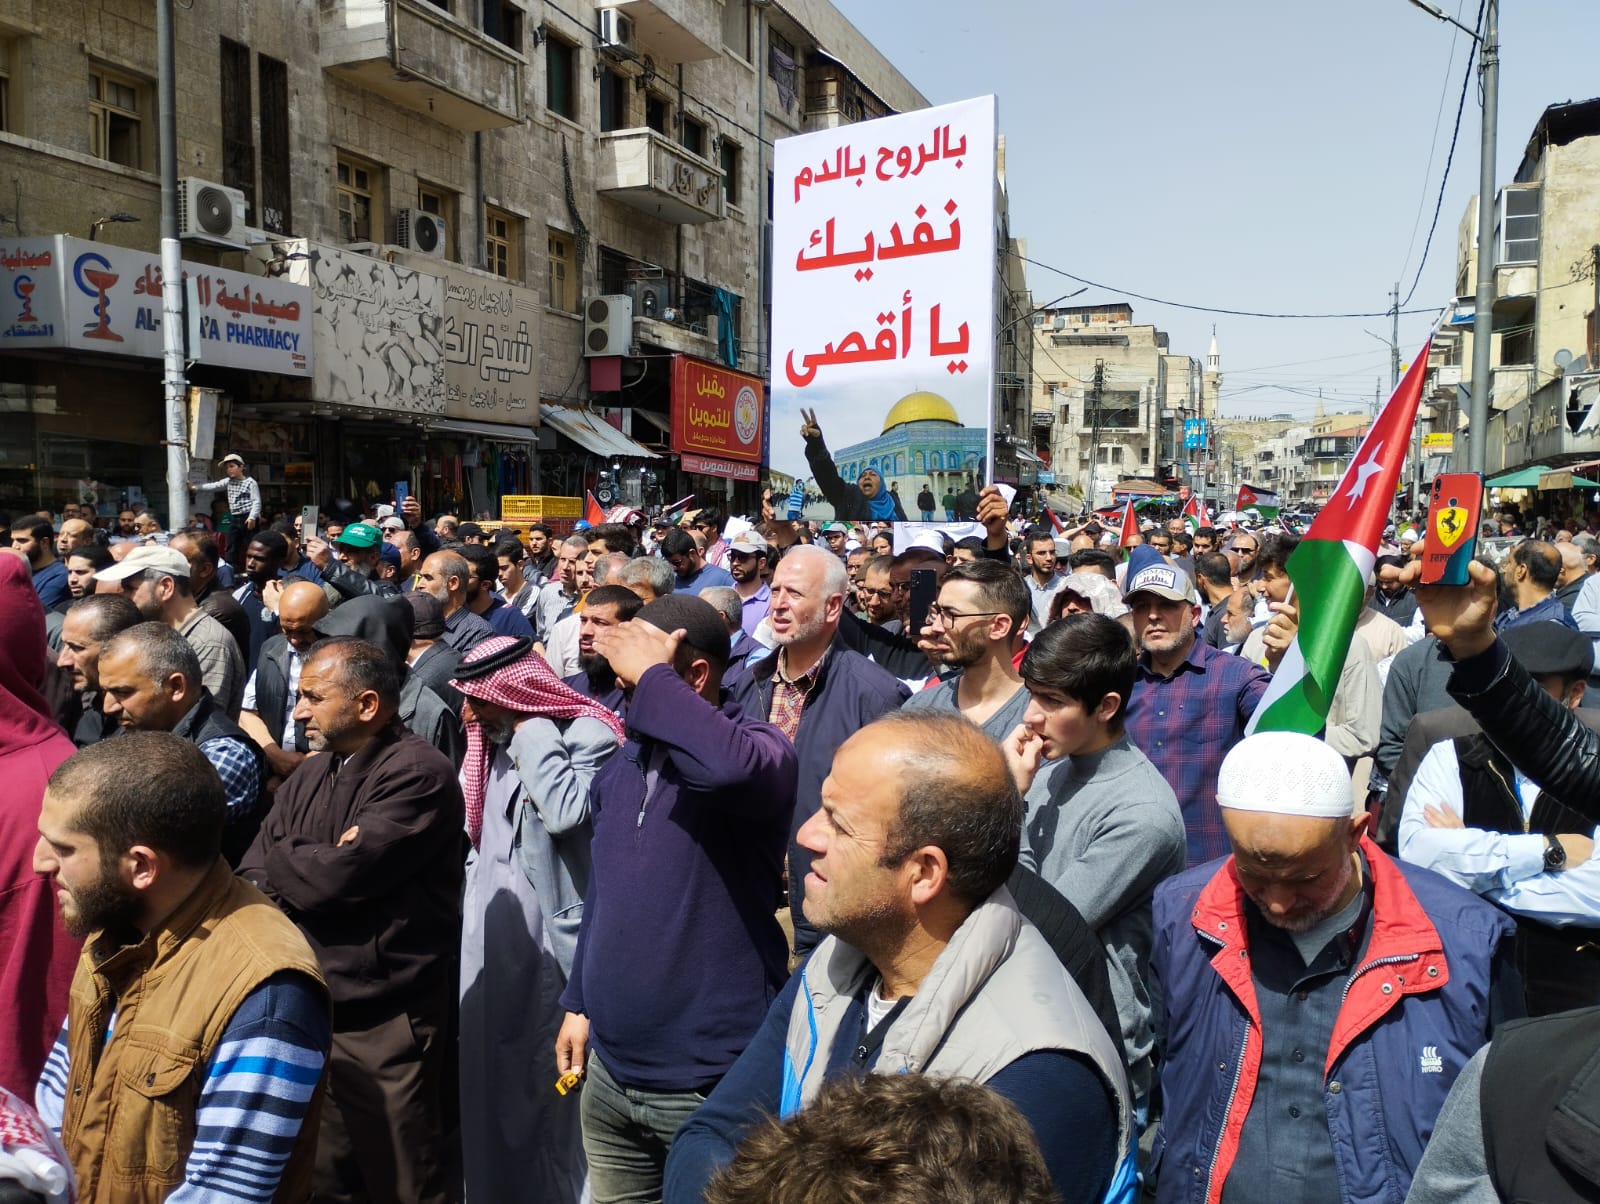 مسيرات حاشدة في عمان ومختلف محافظات المملكة، اليوم الجمعة، نصرةً للمسجد الأقصى ودعماً للمقاومة الفلسطينية